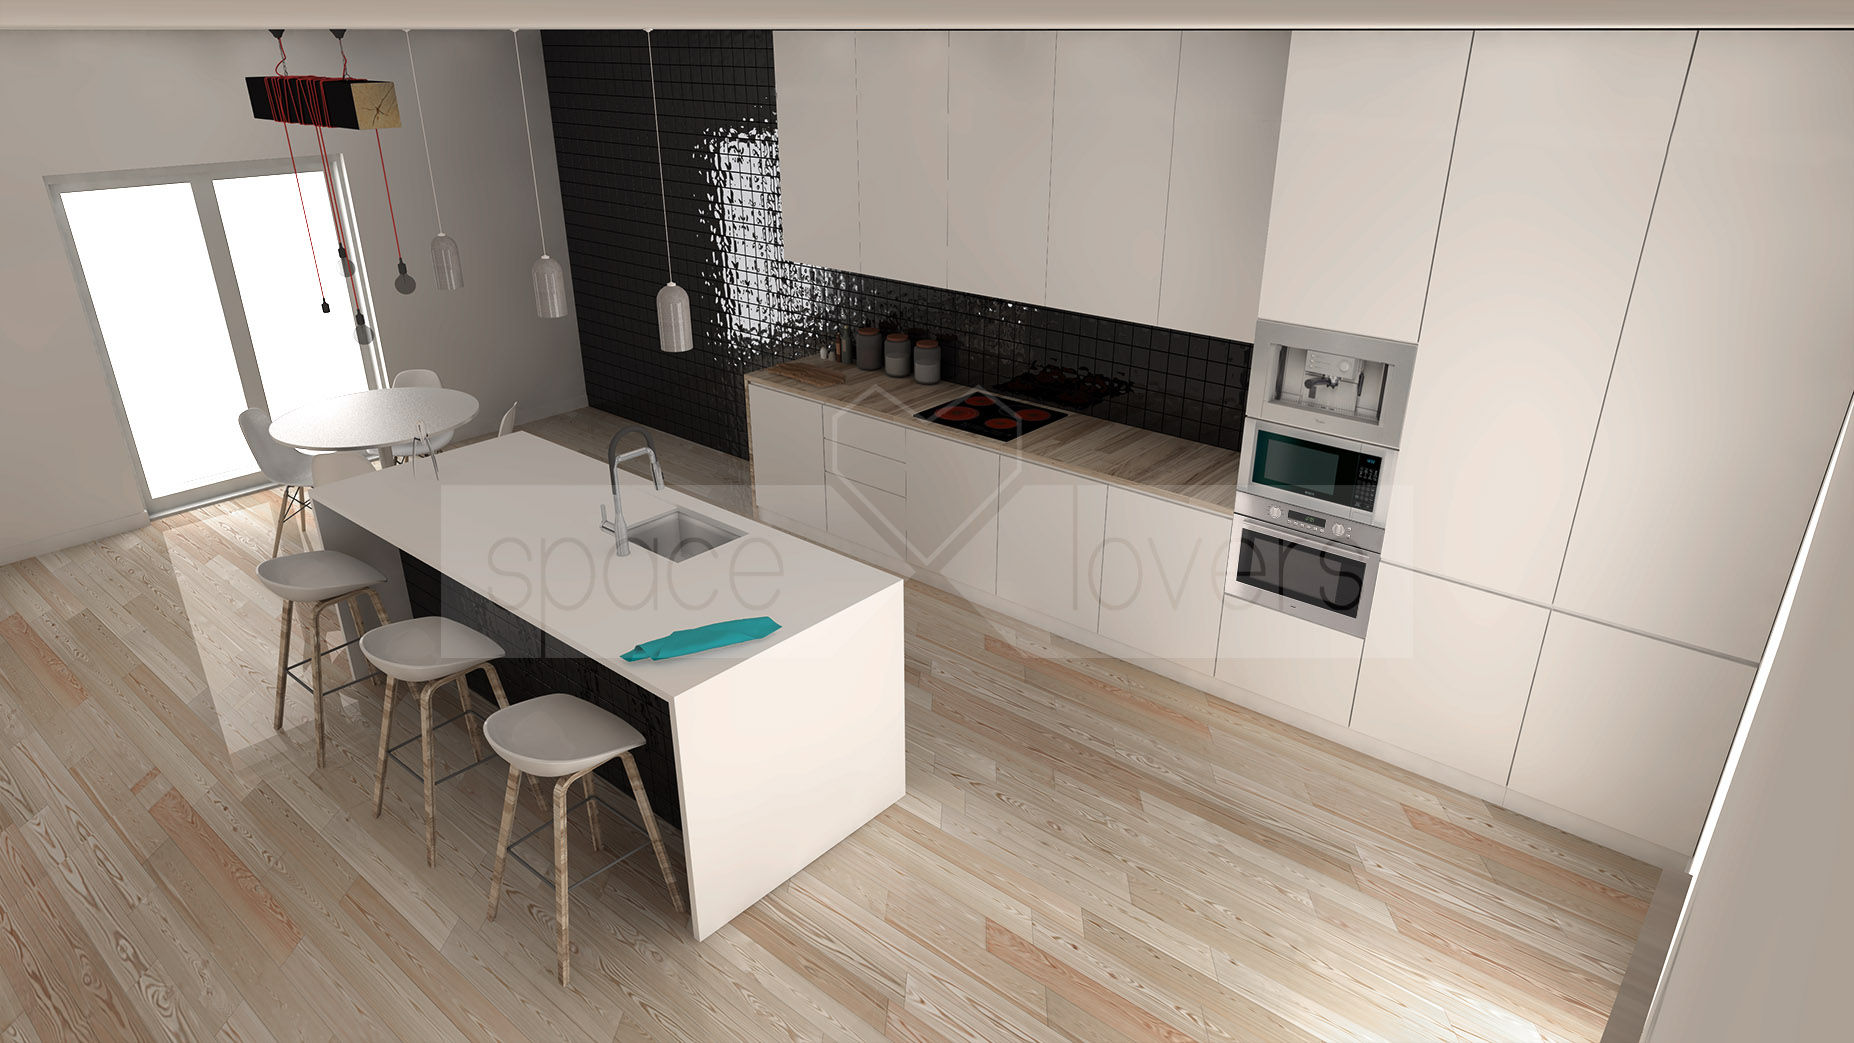 Remodelação de Apartamento em Benfica, Lisboa, spacelovers spacelovers Modern kitchen